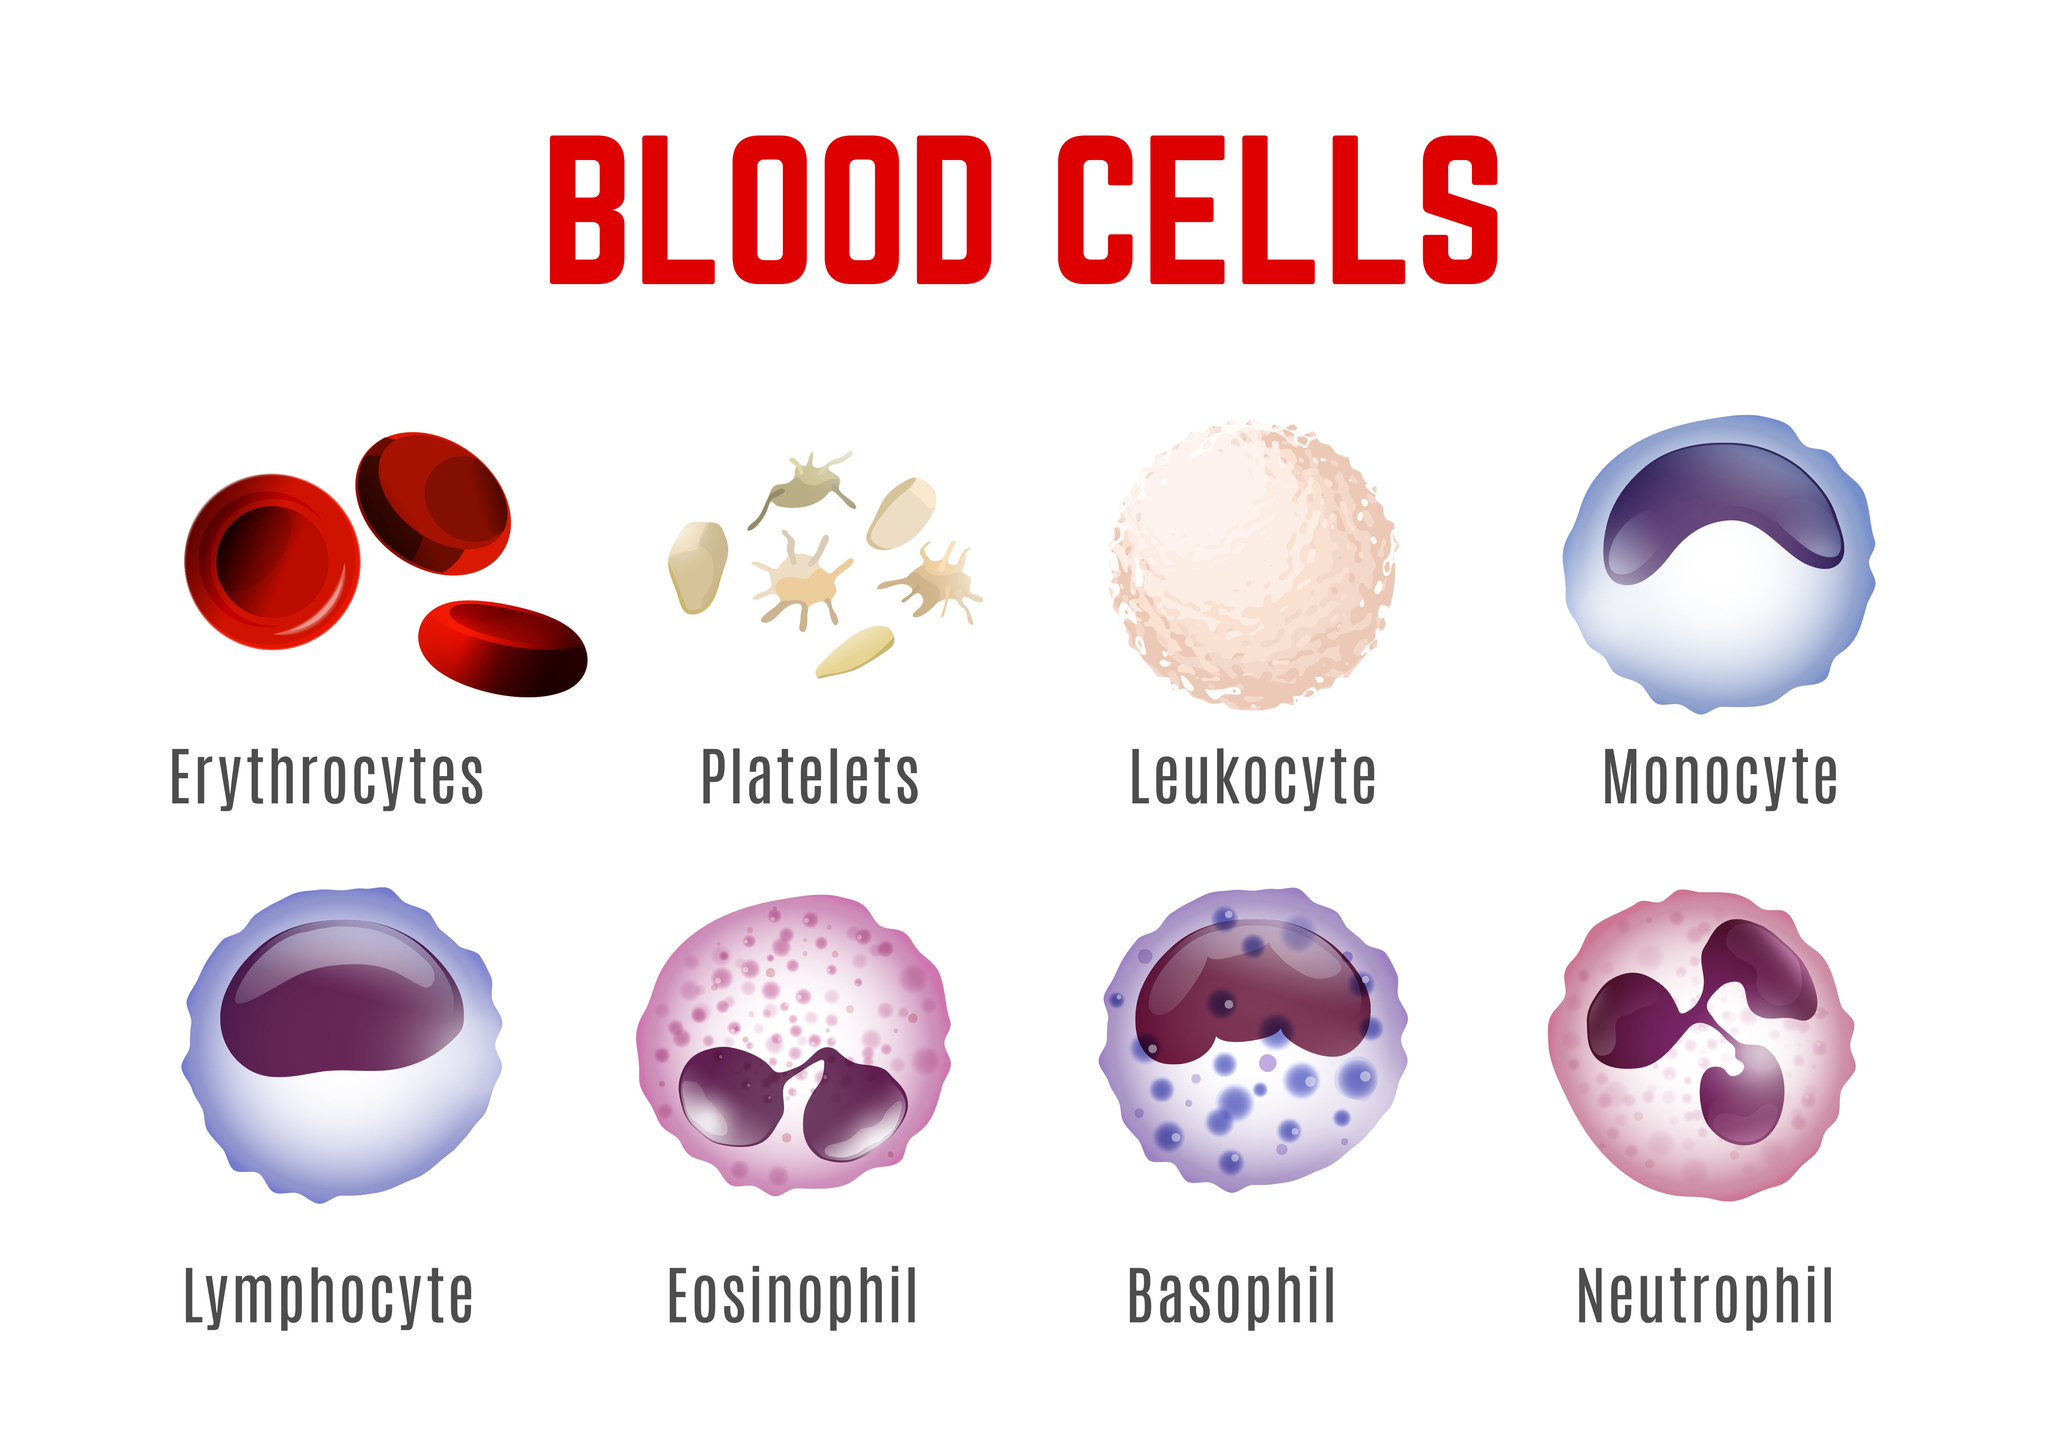 Anzeige der Blutzellen - Erythrozyten, Blutplättchen, Leukozyten, Monozyten, Lymphozyten, Eosinophile, Basophile und Neutrophile.